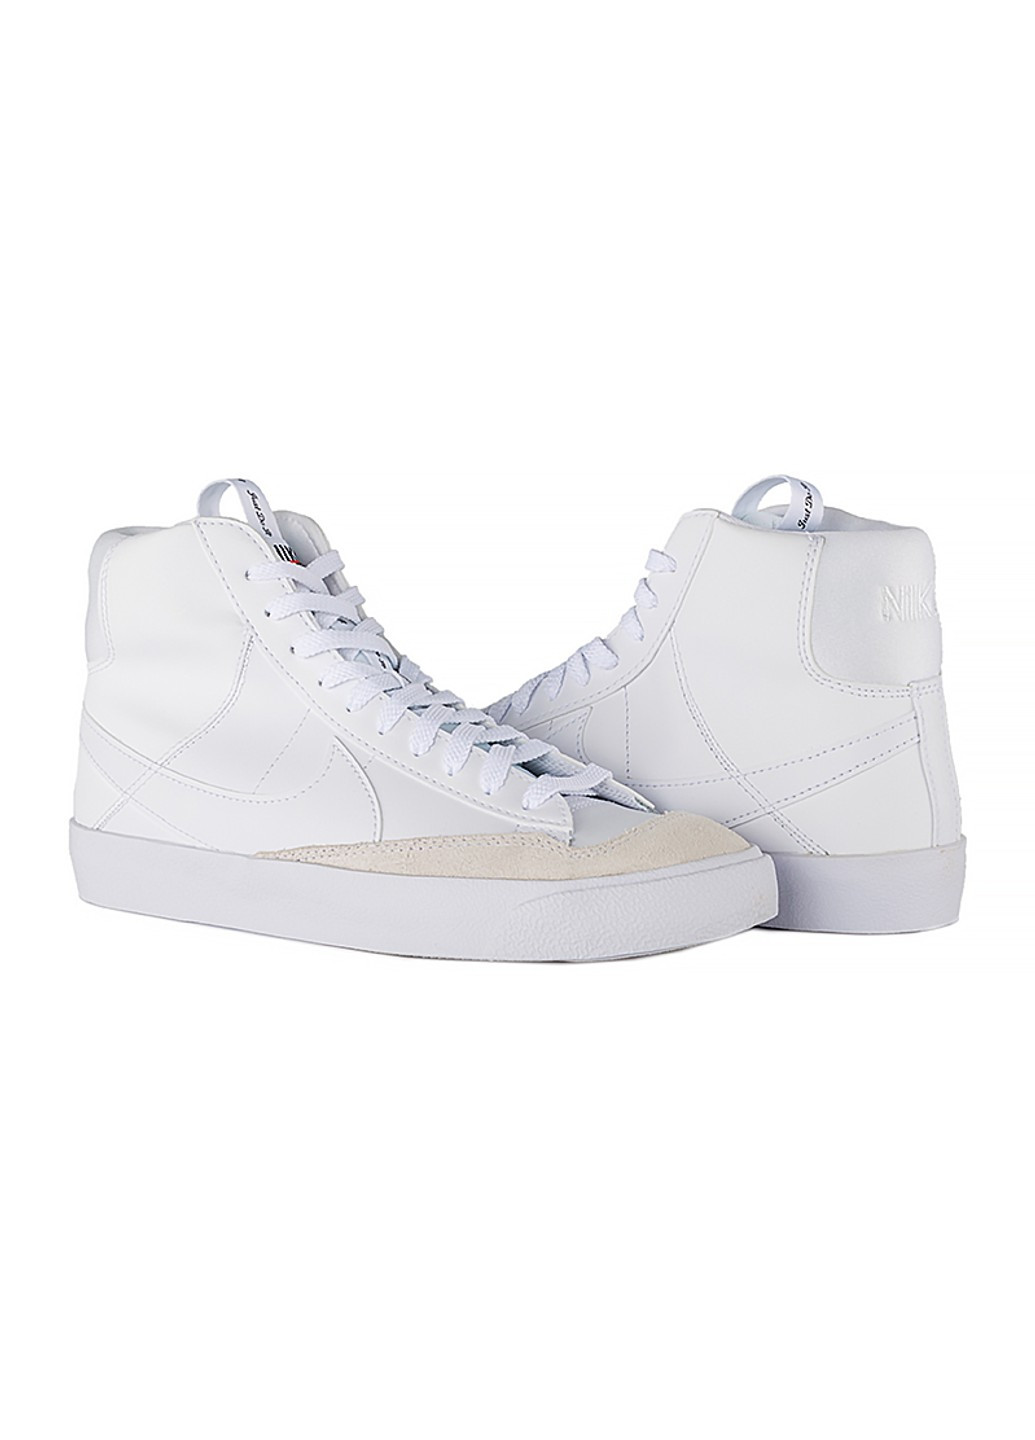 Белые демисезонные кроссовки blazer mid 77 se d (gs) Nike